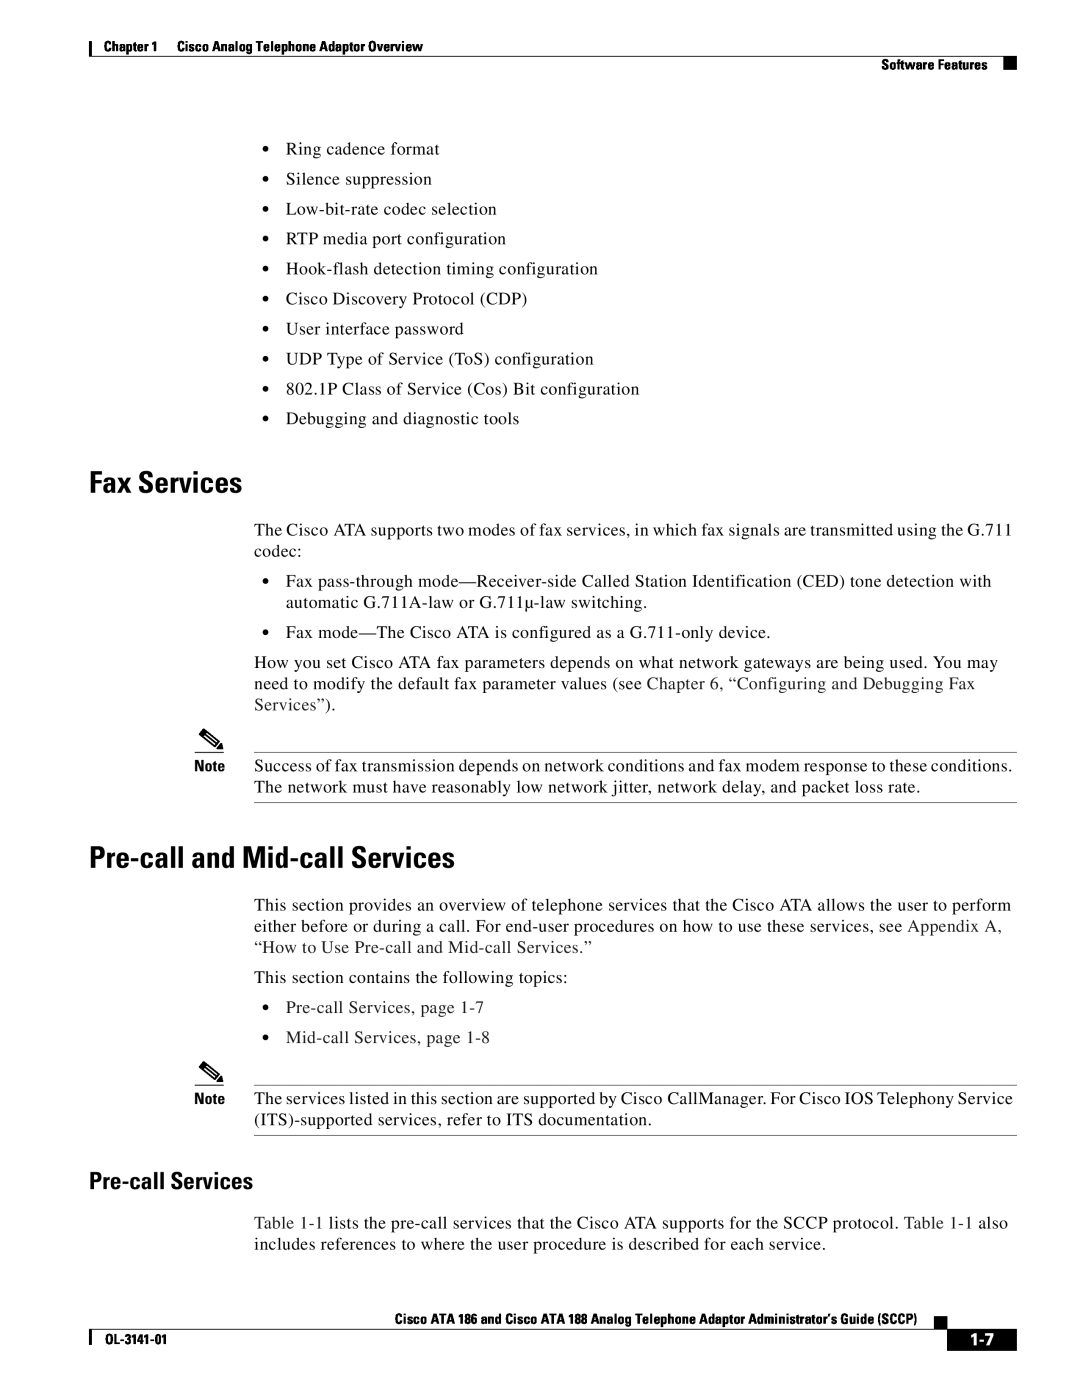 Cisco Systems ATA 188, ATA 186 manual Fax Services, Pre-call and Mid-call Services, Pre-call Services 